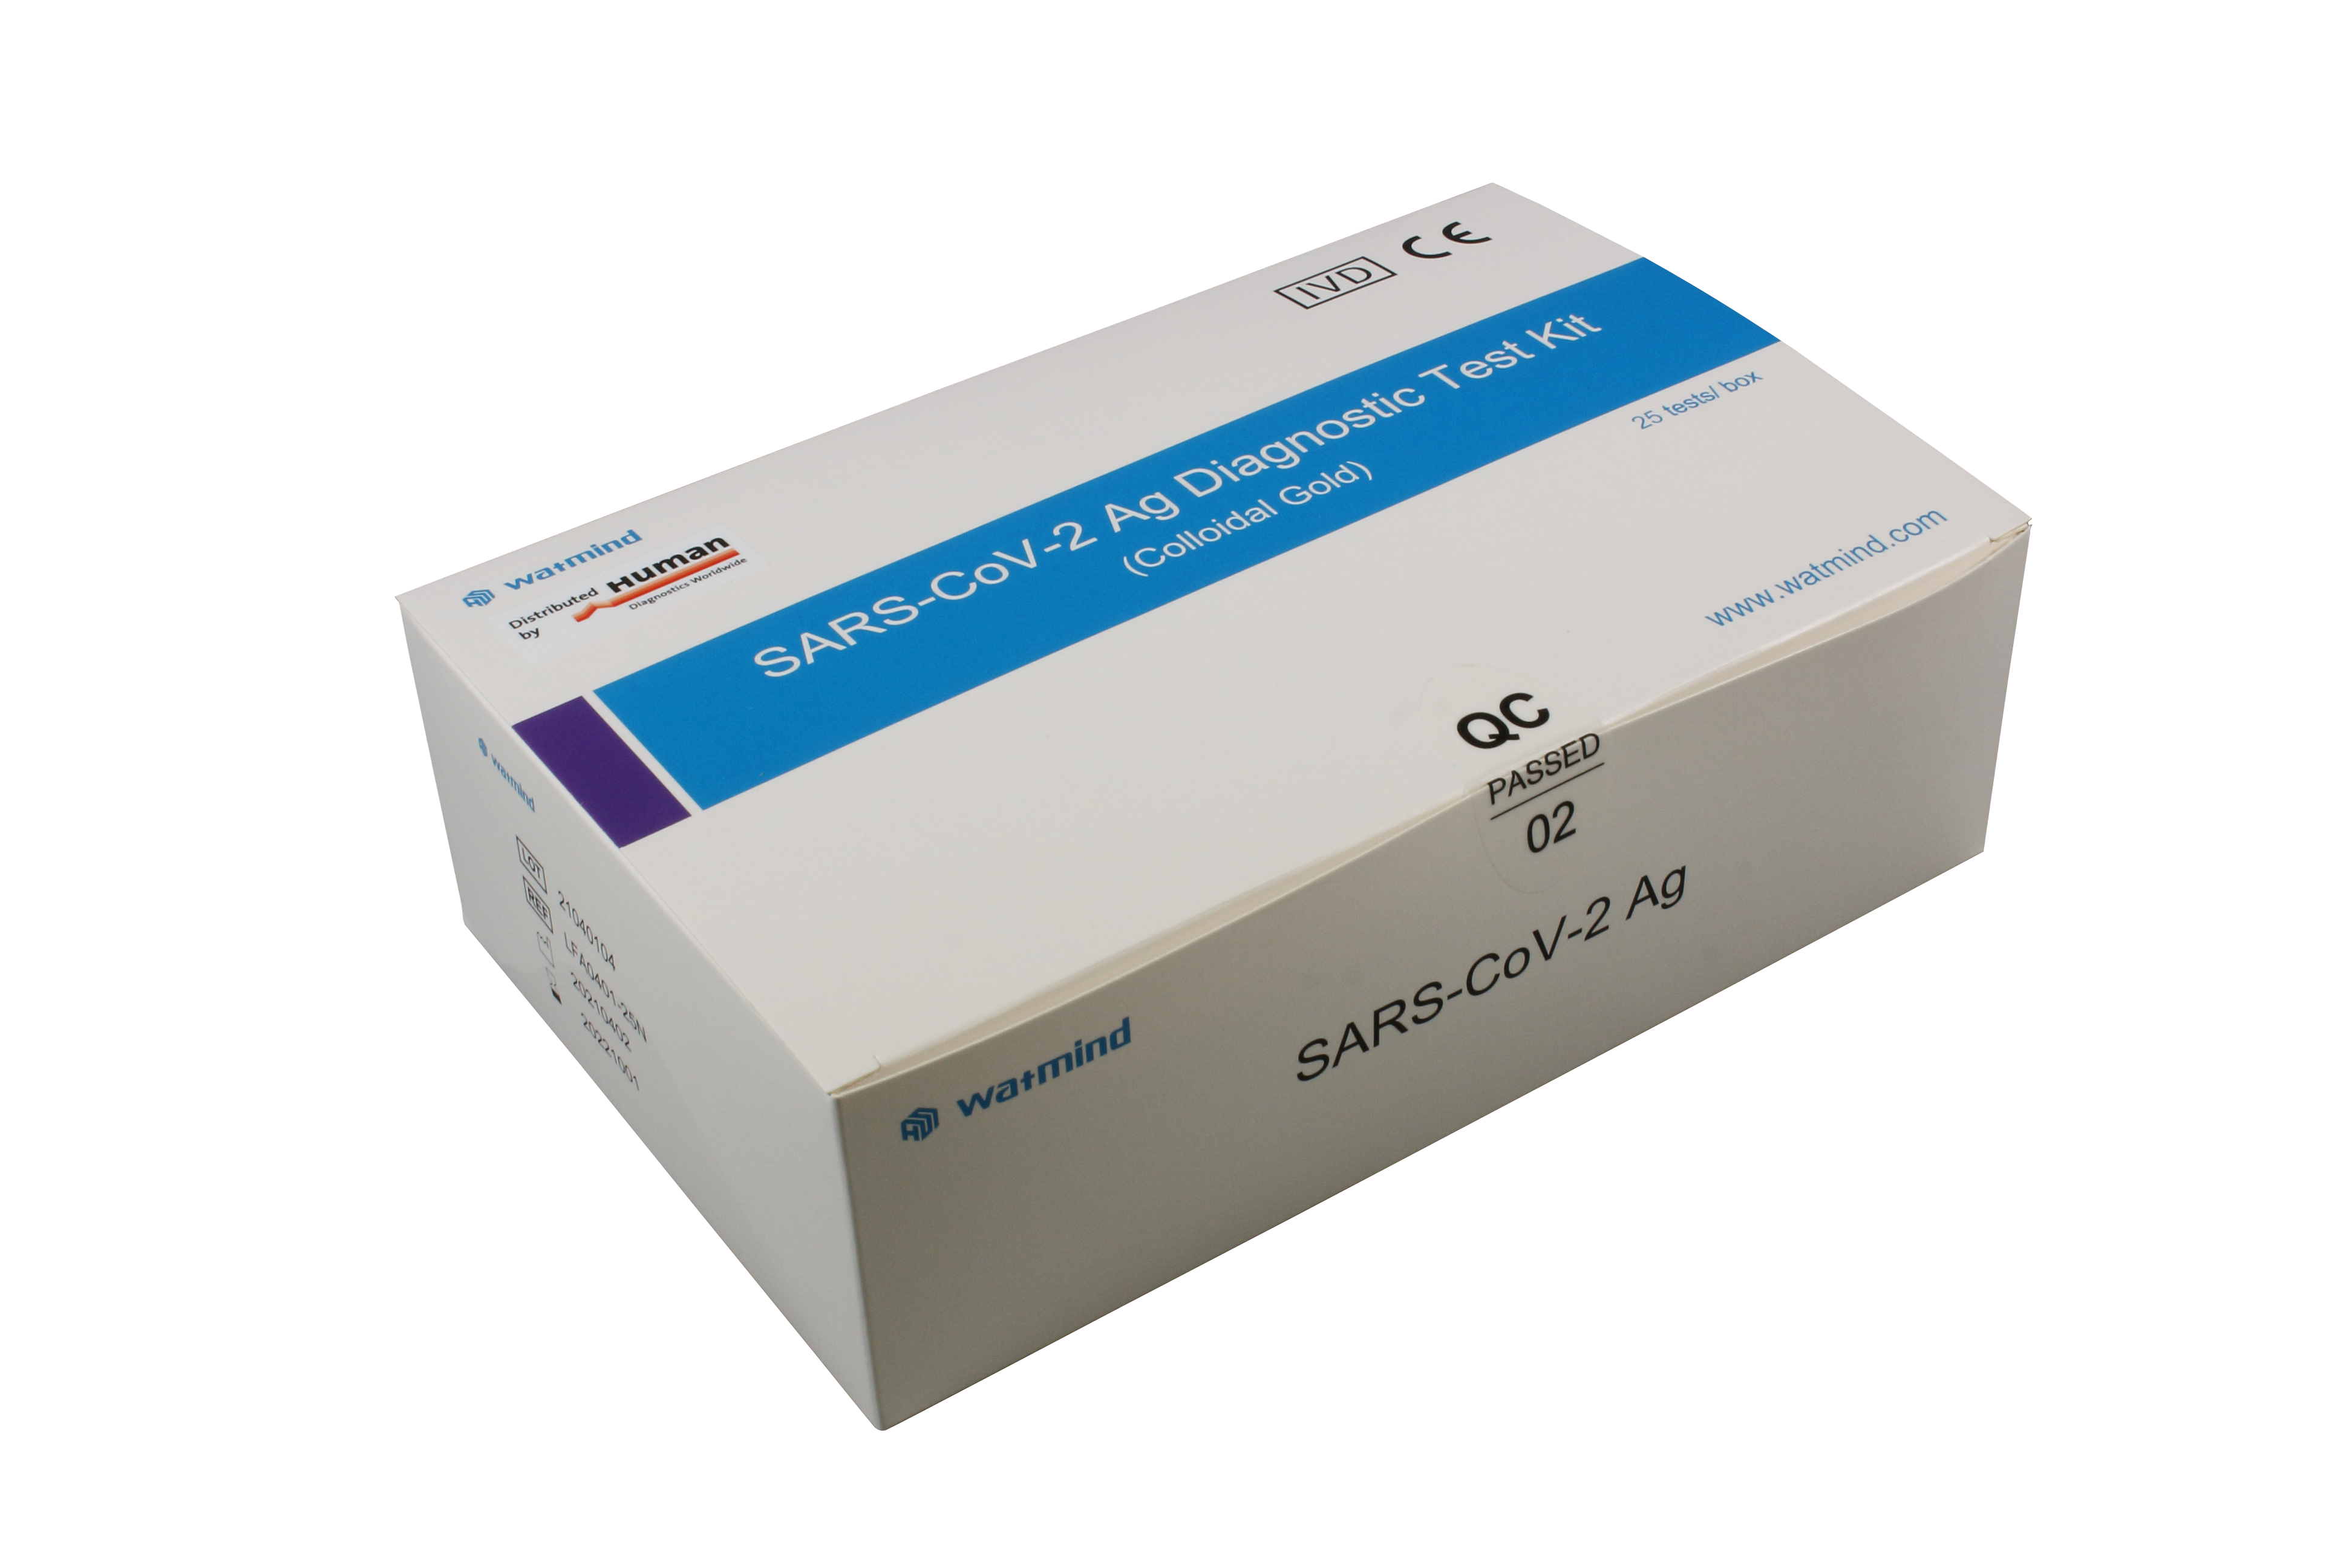 Watmind SARS-CoV-2 Antigen Schnelltest "4 in 1" (Speichel/Nasal/Nasen-Rachen-Abstriche)